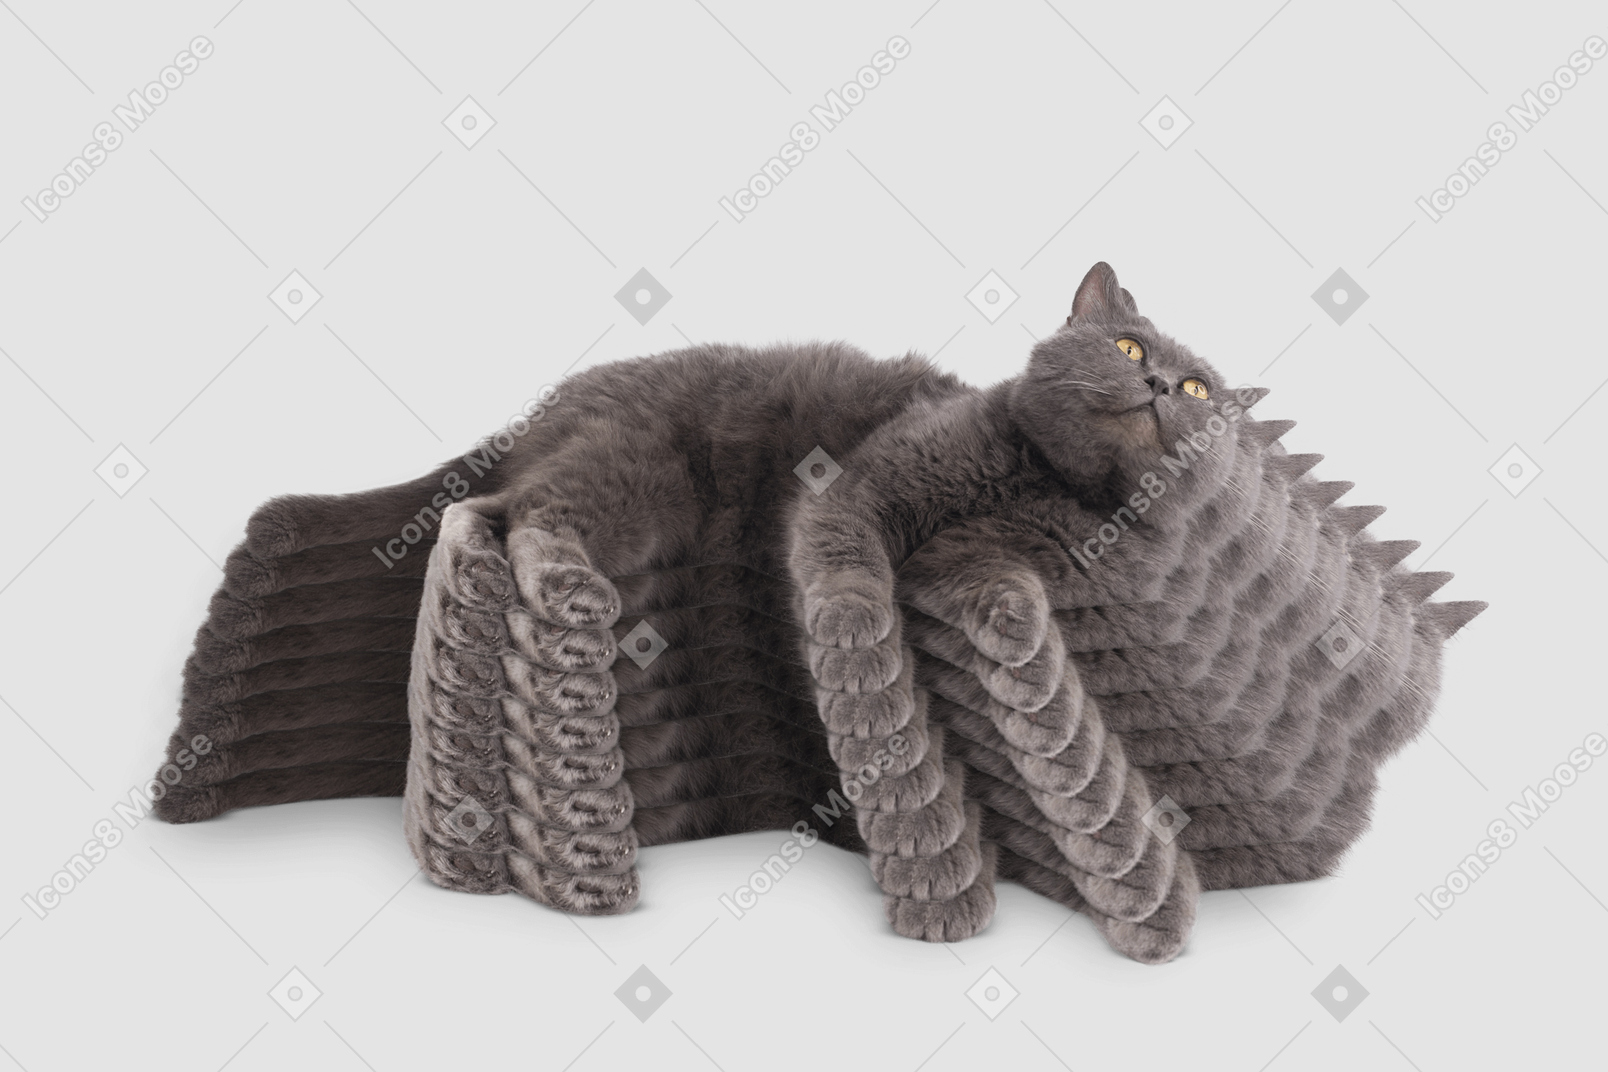 Repeating image of grey cat